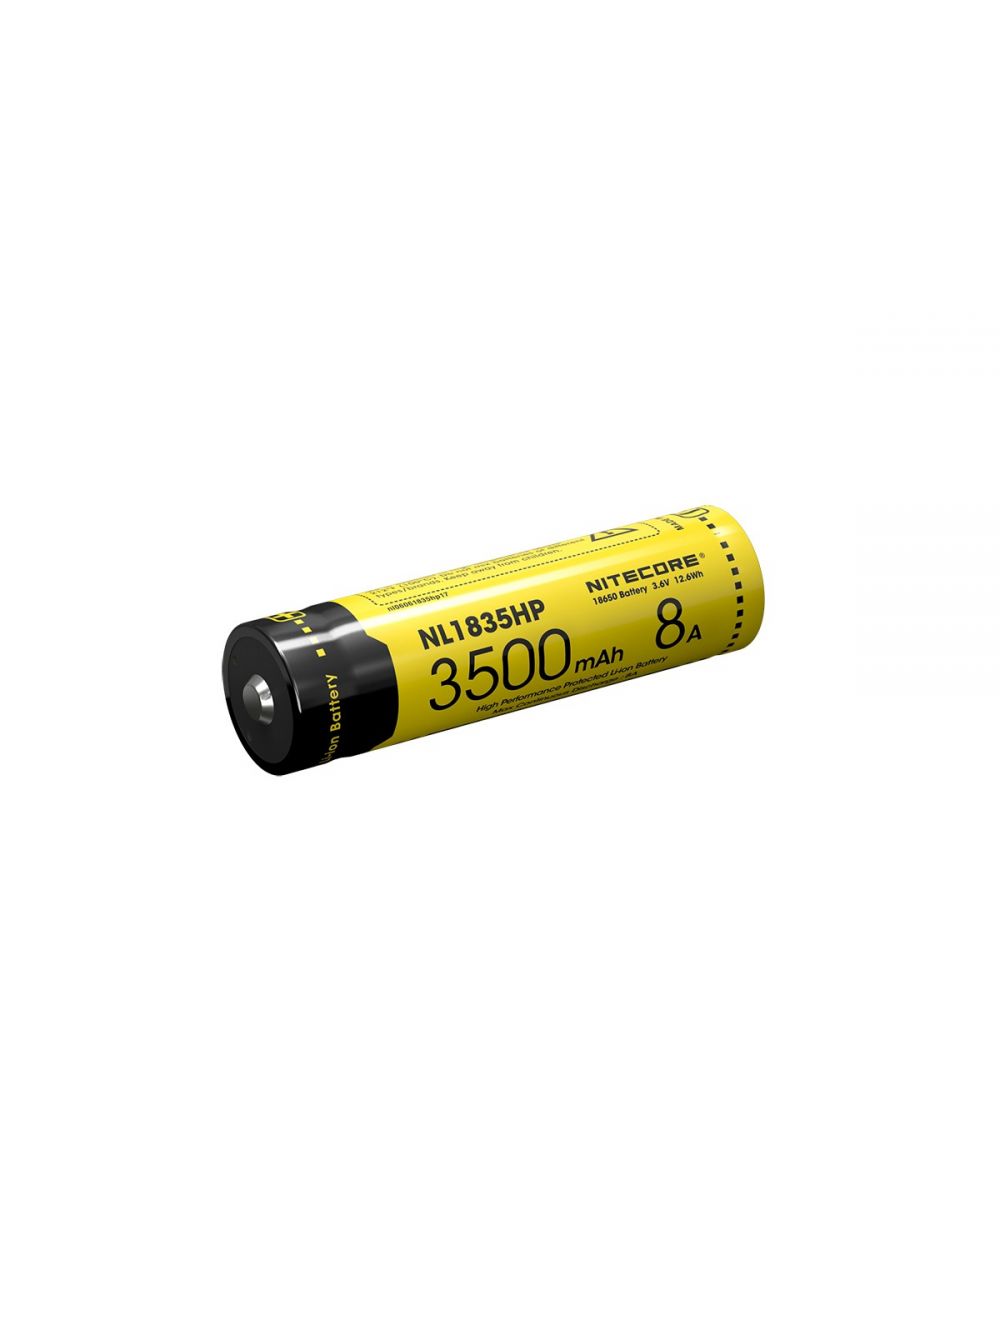 begrijpen hypotheek T Nitecore NL1835HP Oplaadbare 18650 Li-Ion batterij 3500mAh kopen?  Zaklampen.nl